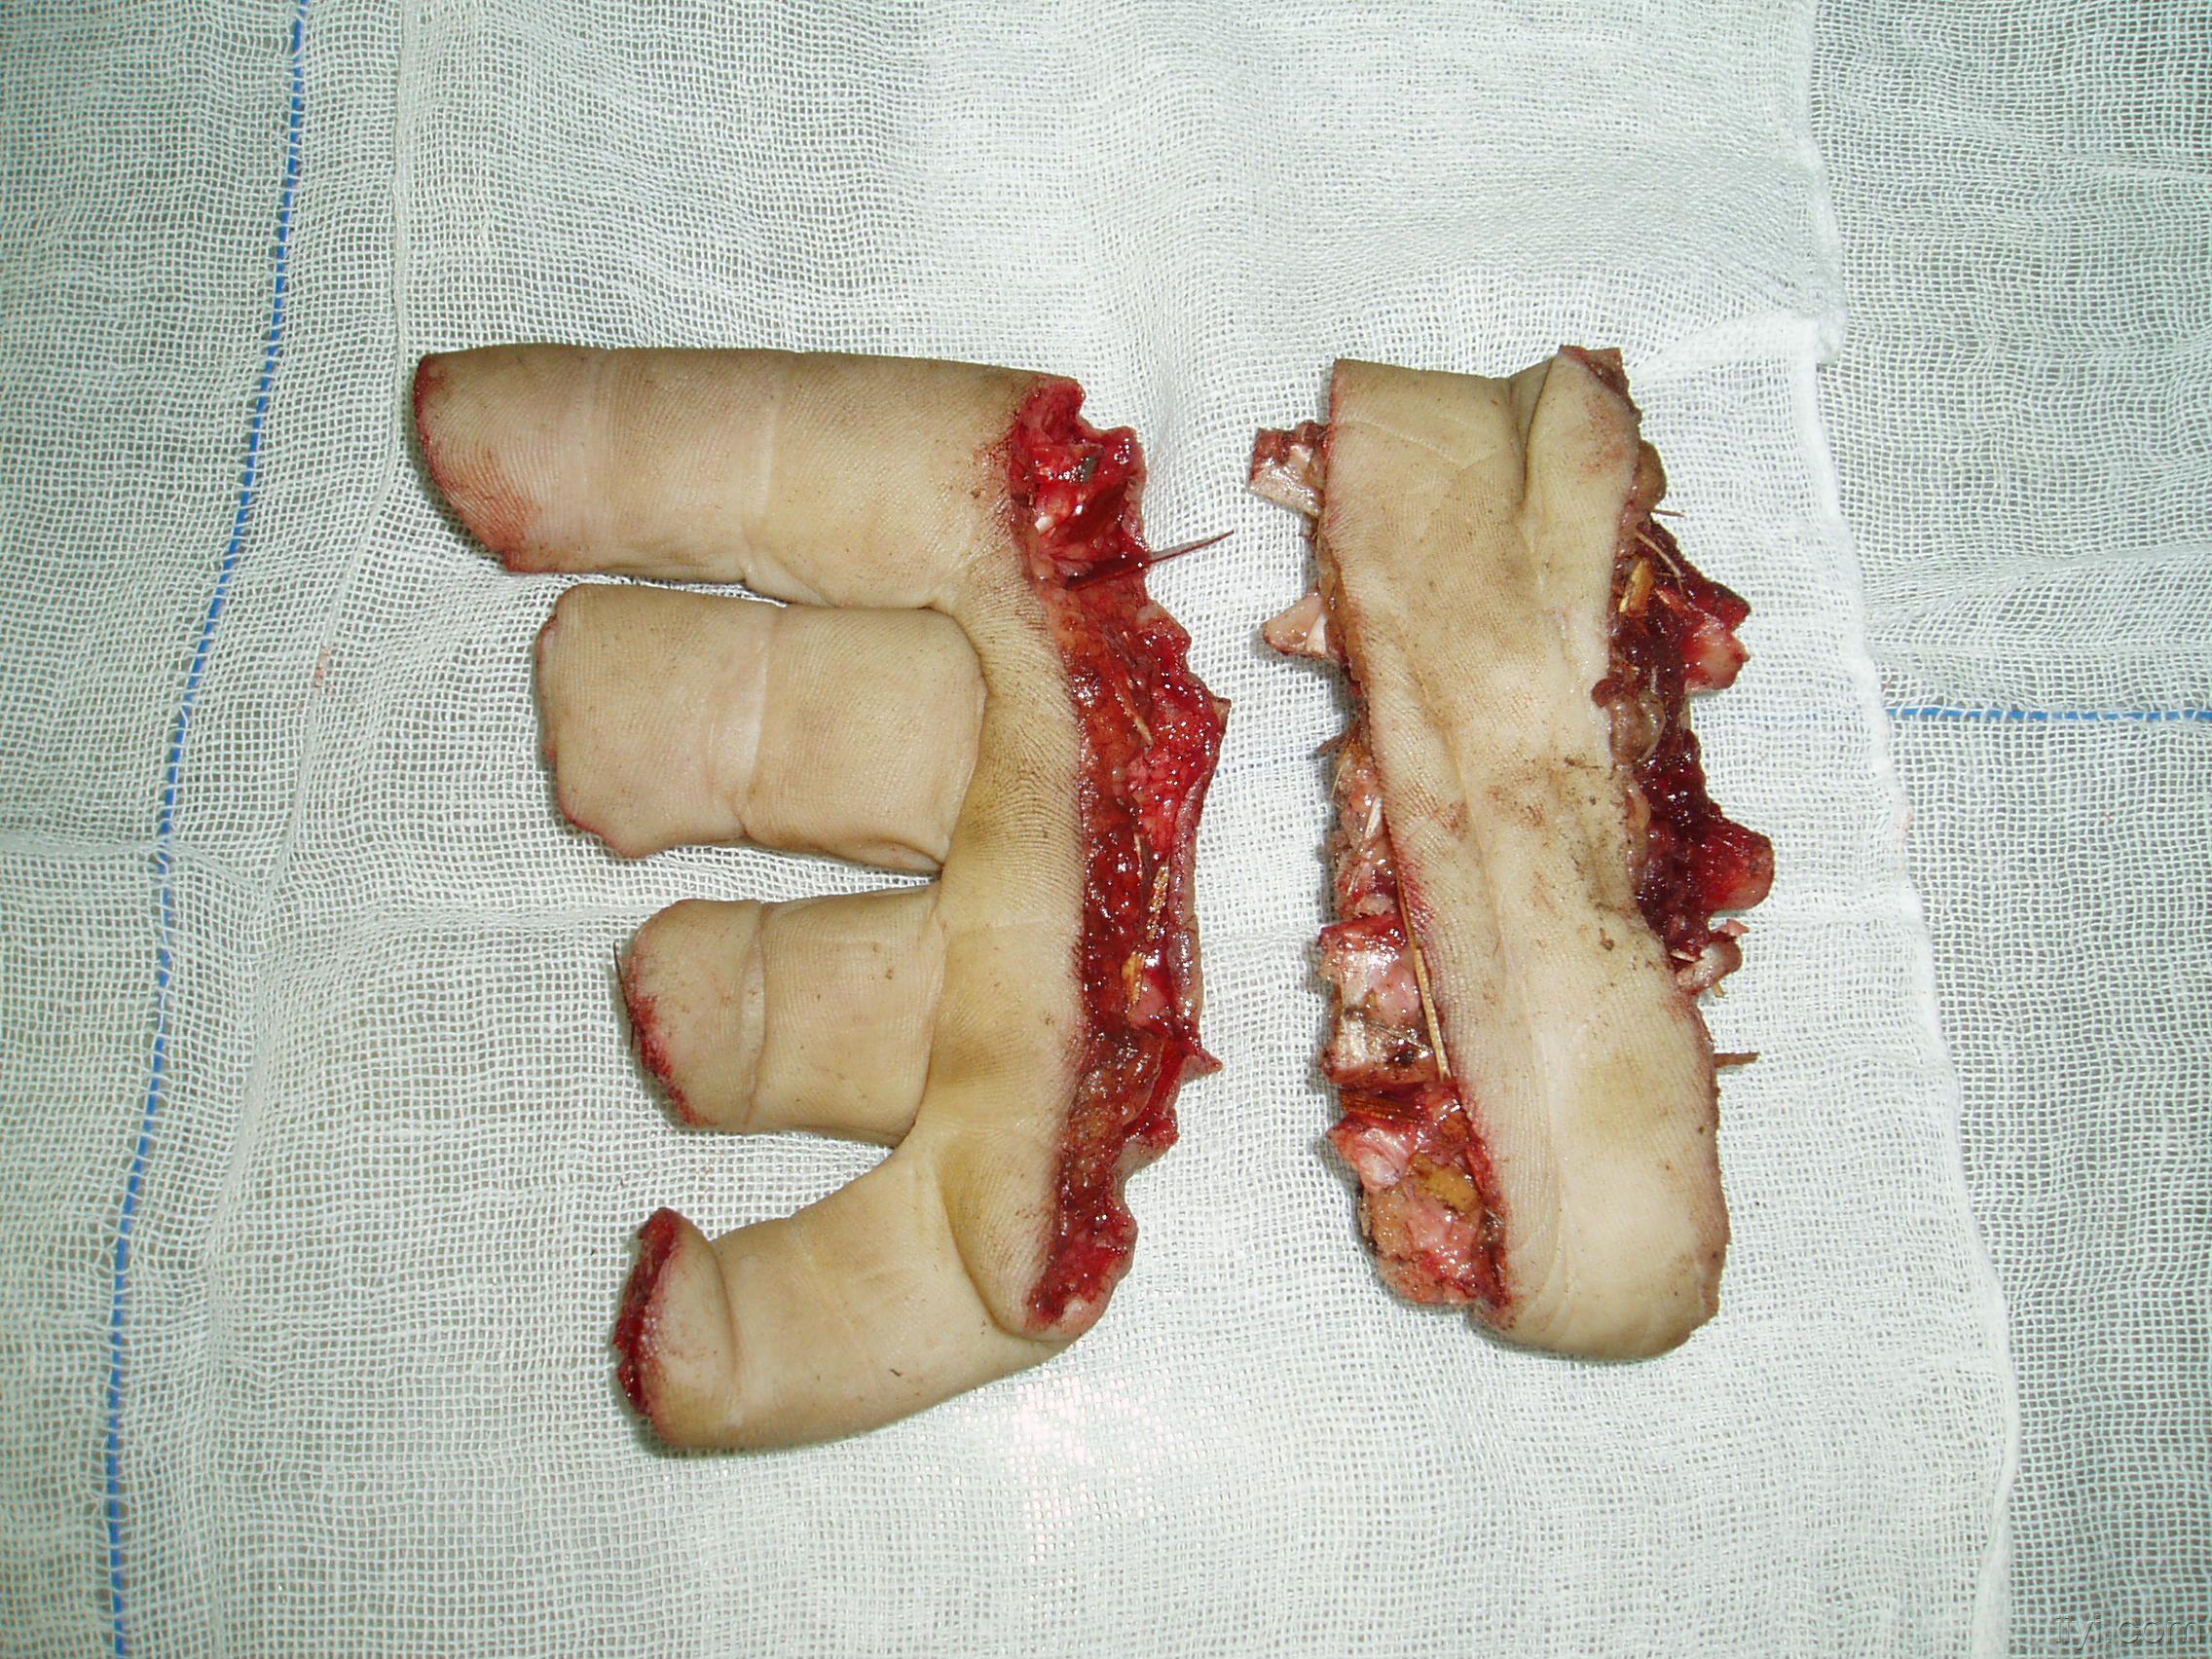 六指症手术图片